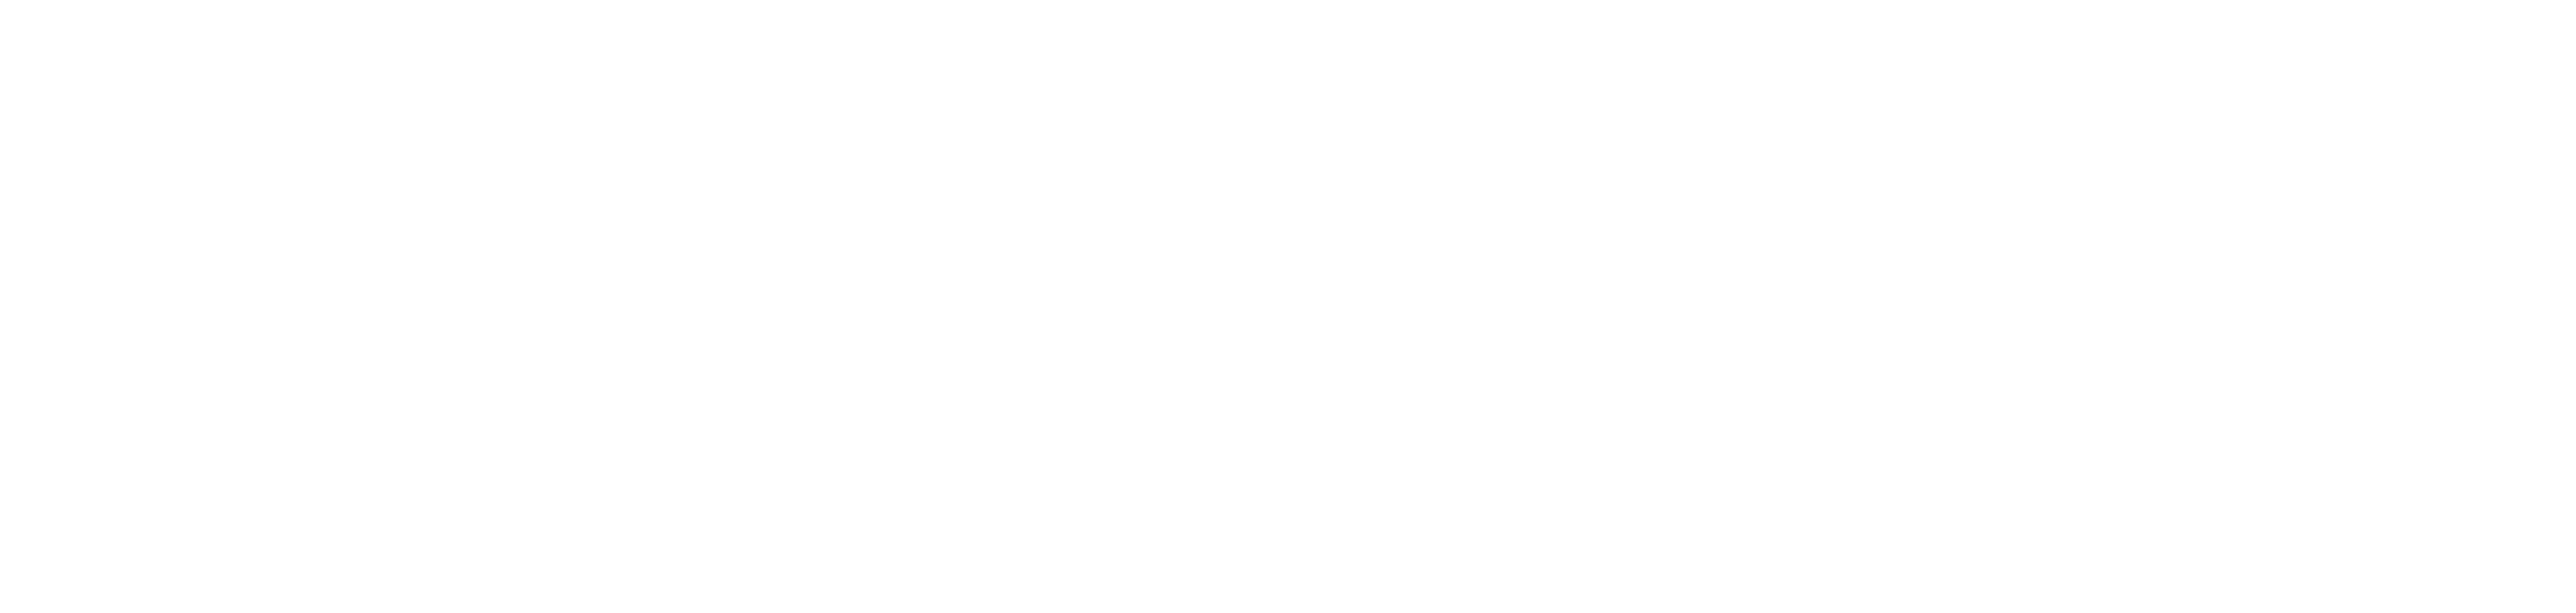 Sound Wave Logo Design PNG image